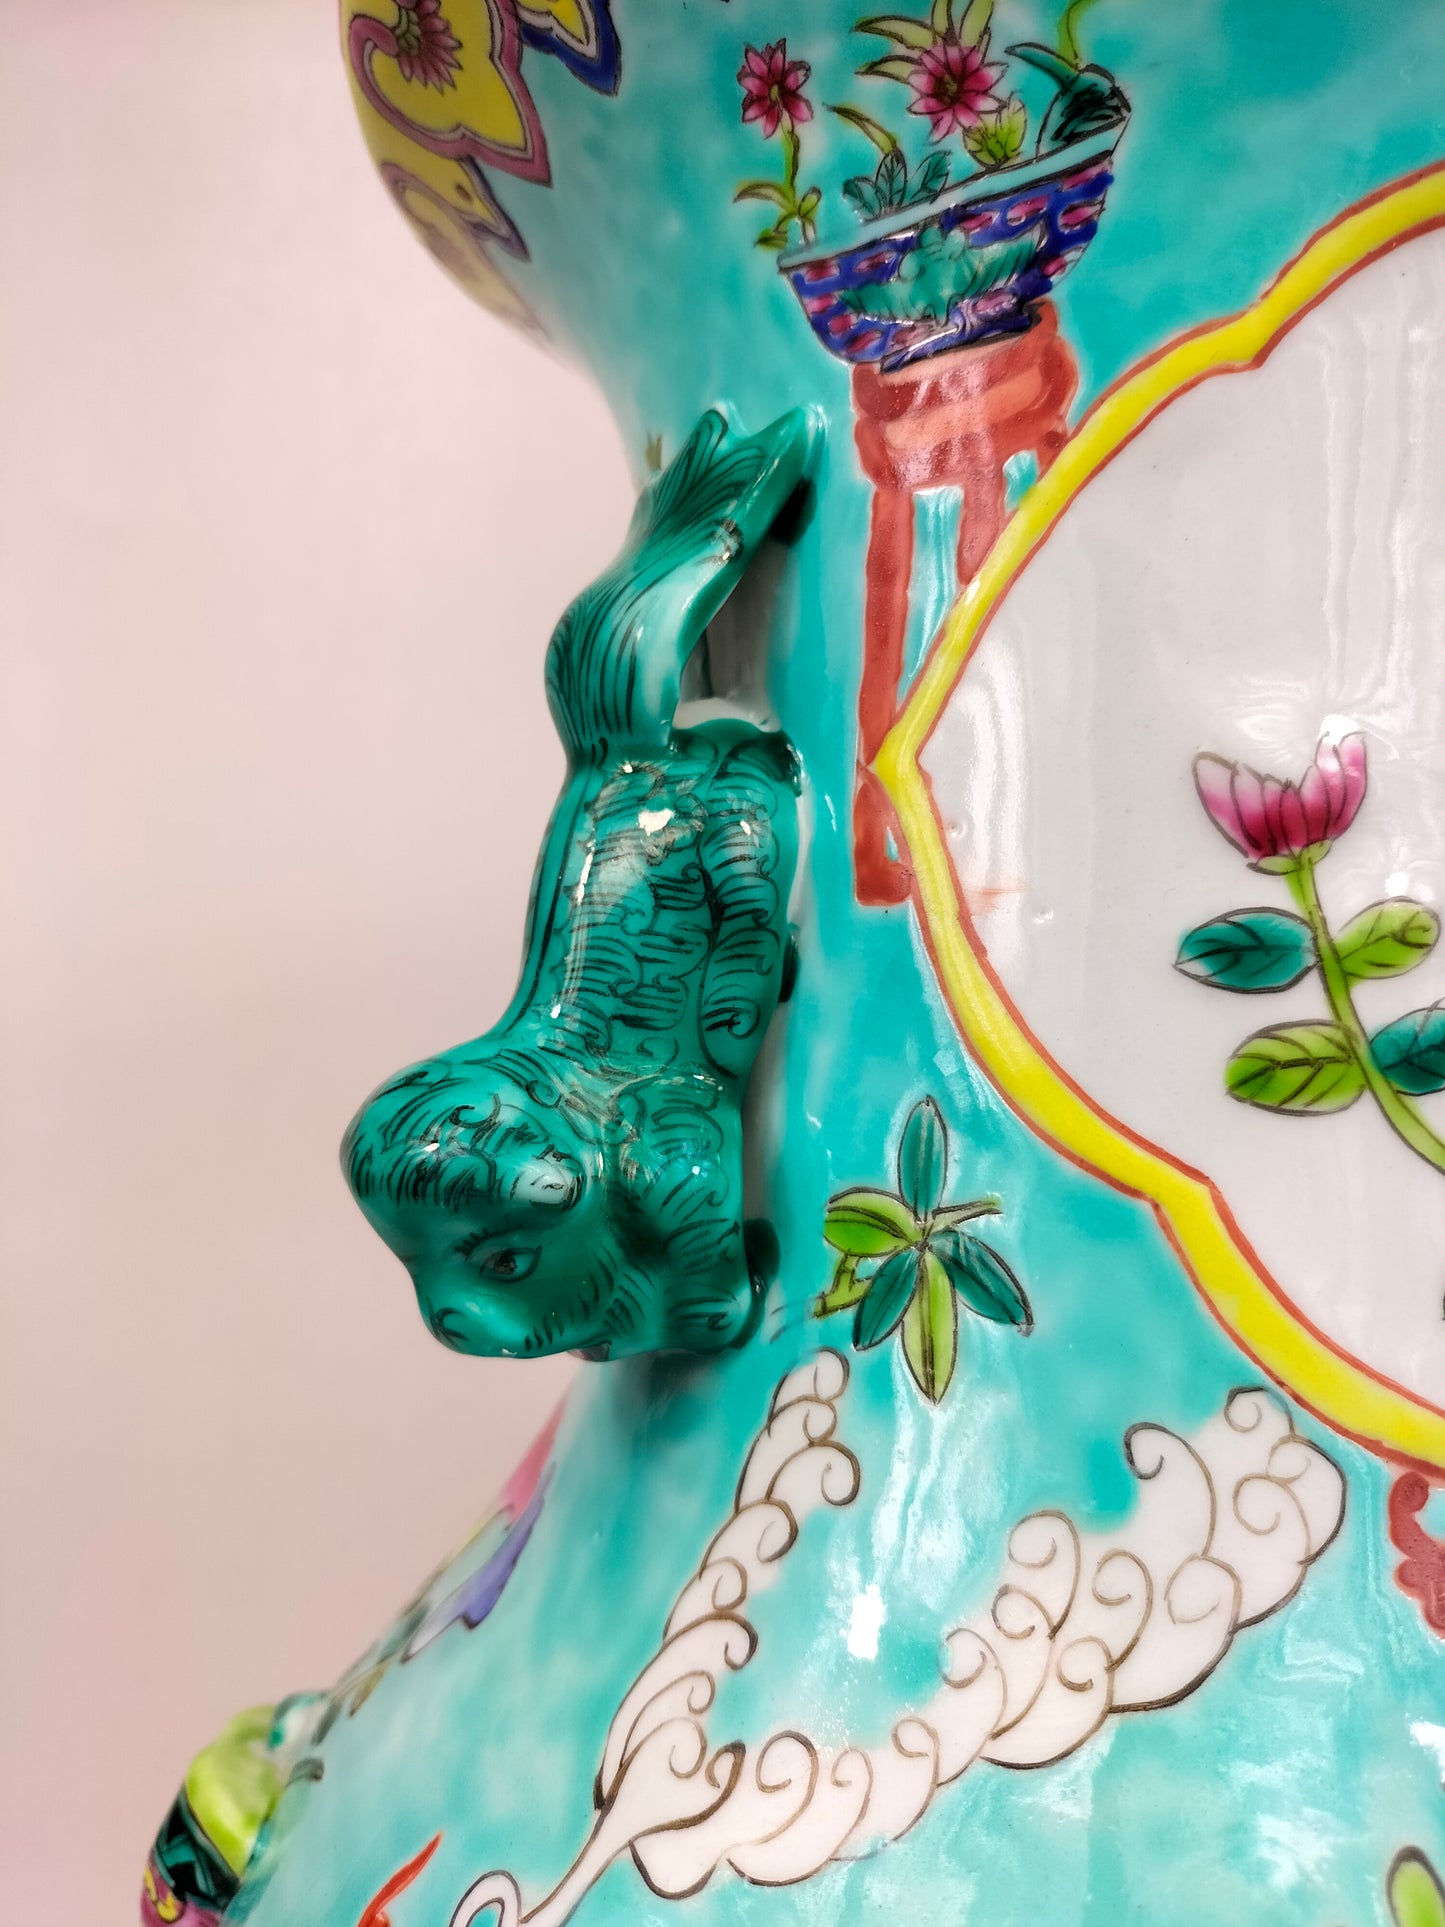 Pasu mawar famille turquoise Cina besar dihiasi dengan barang antik // abad ke-20